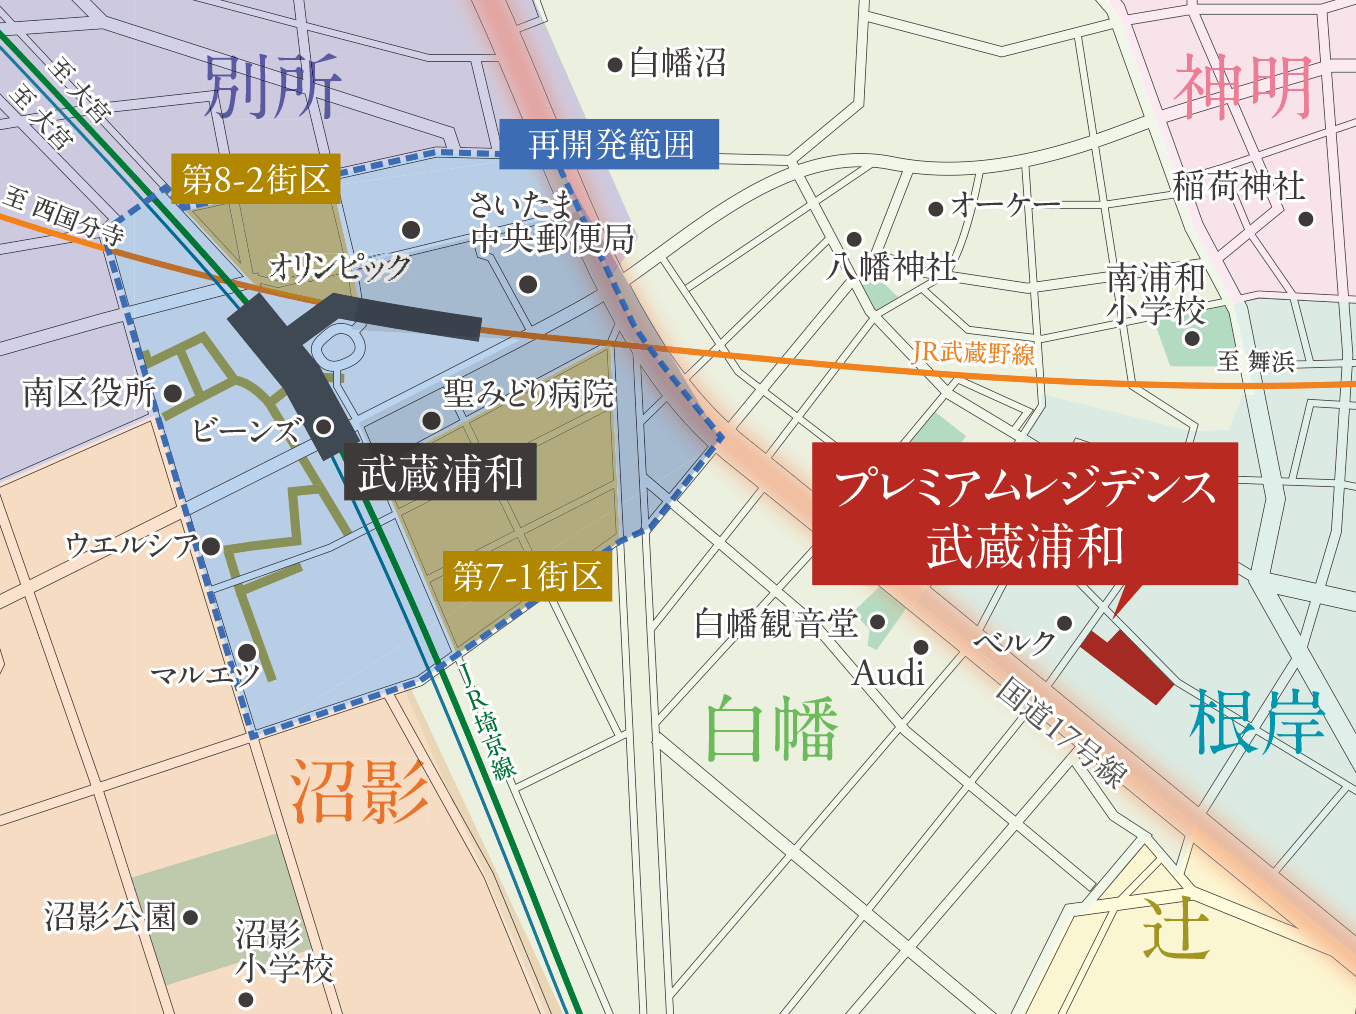 「武蔵浦和」駅周辺再開発概念図